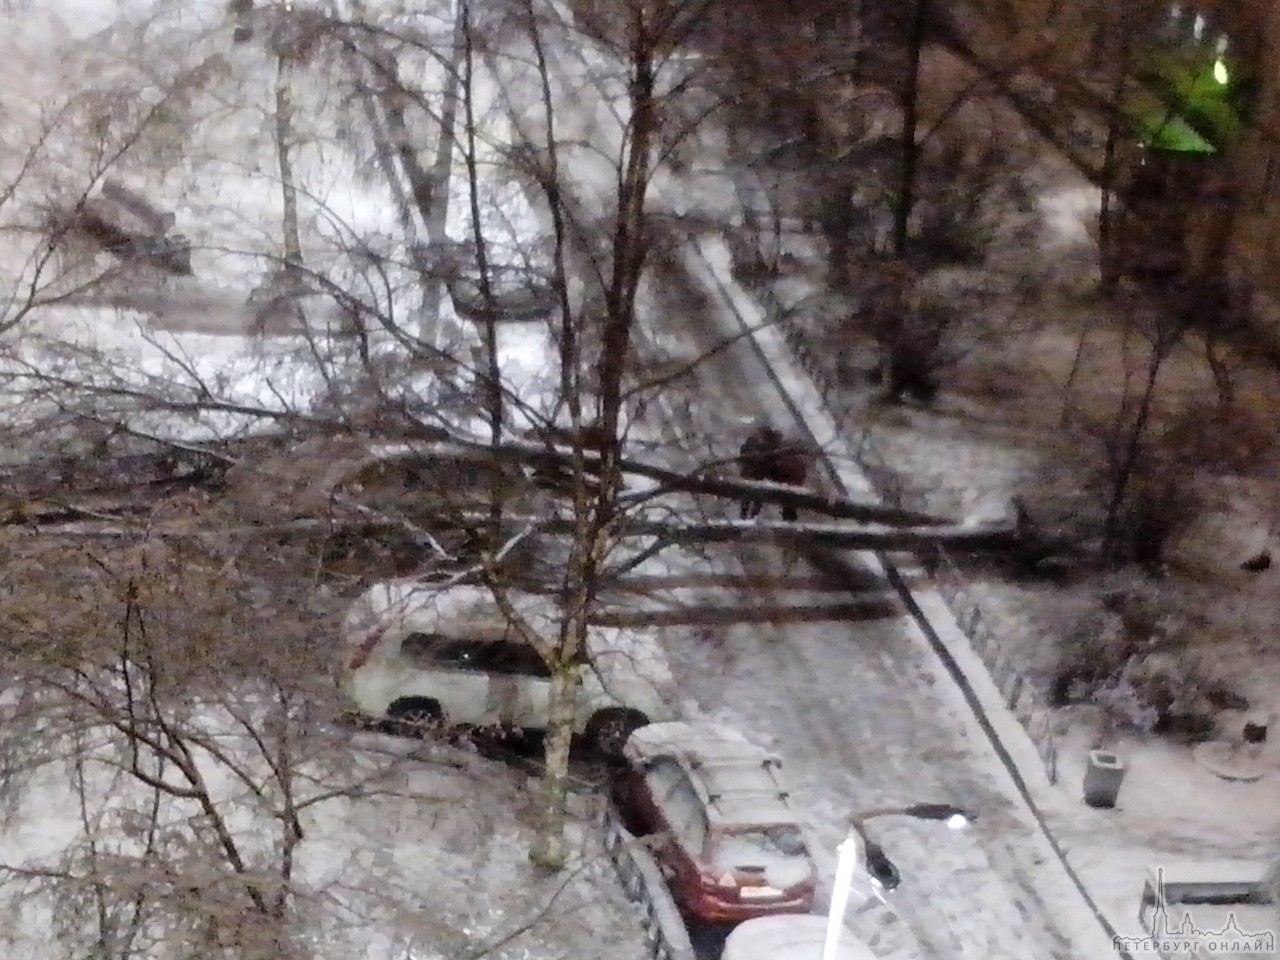 Сегодня в 3 часа ночи на Будапештской ул. 95 корп. 1 во дворе с грохотом упало дерево прямо на автом...